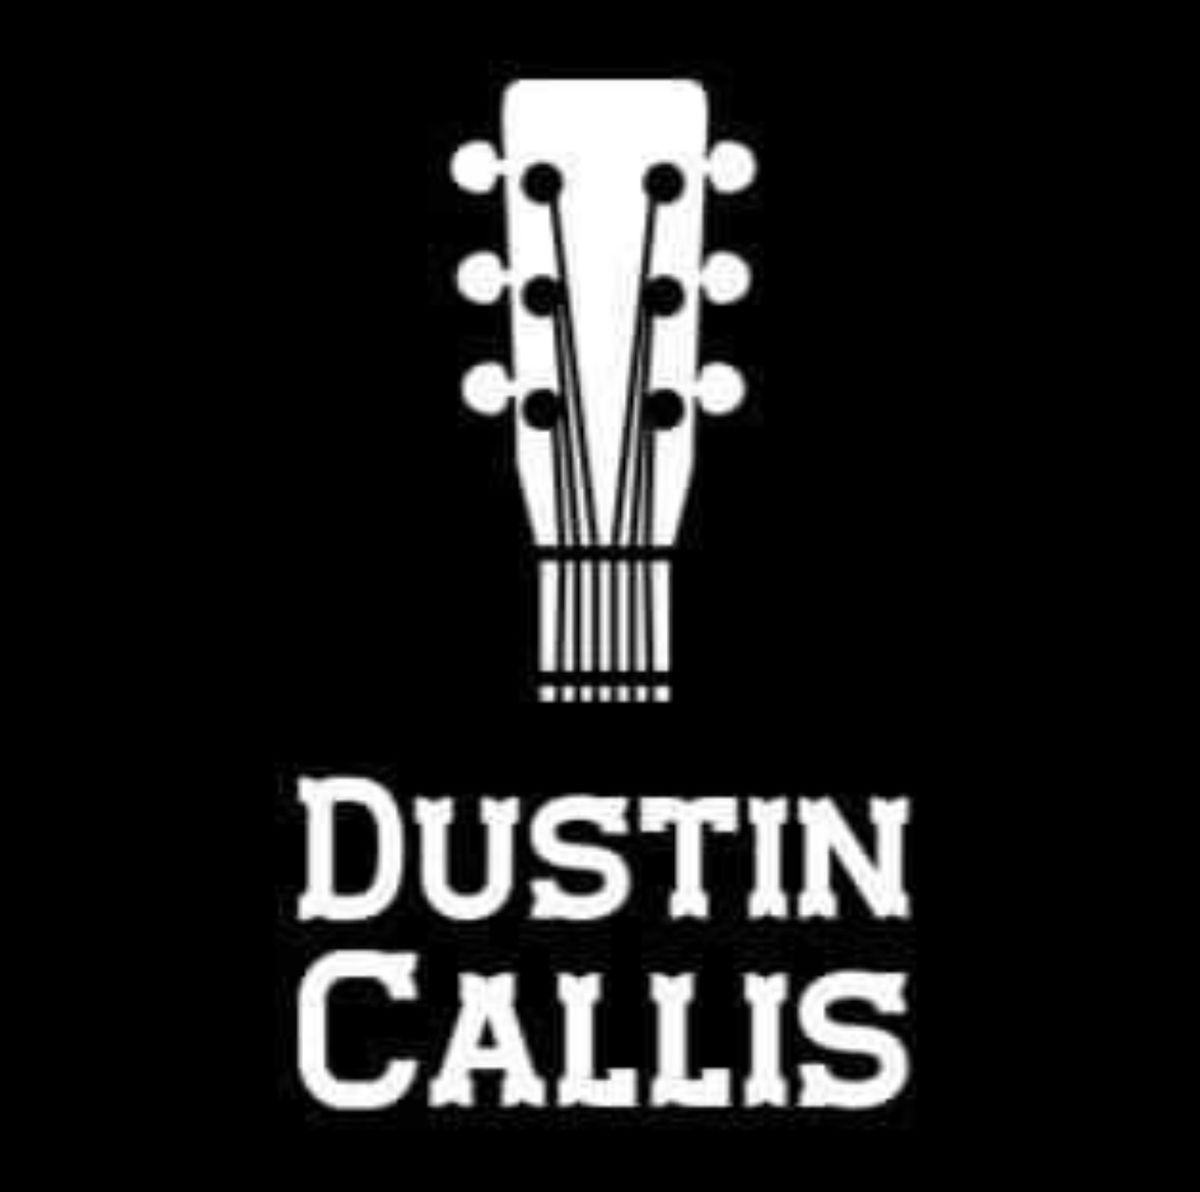 Dustin Callis Playing Live